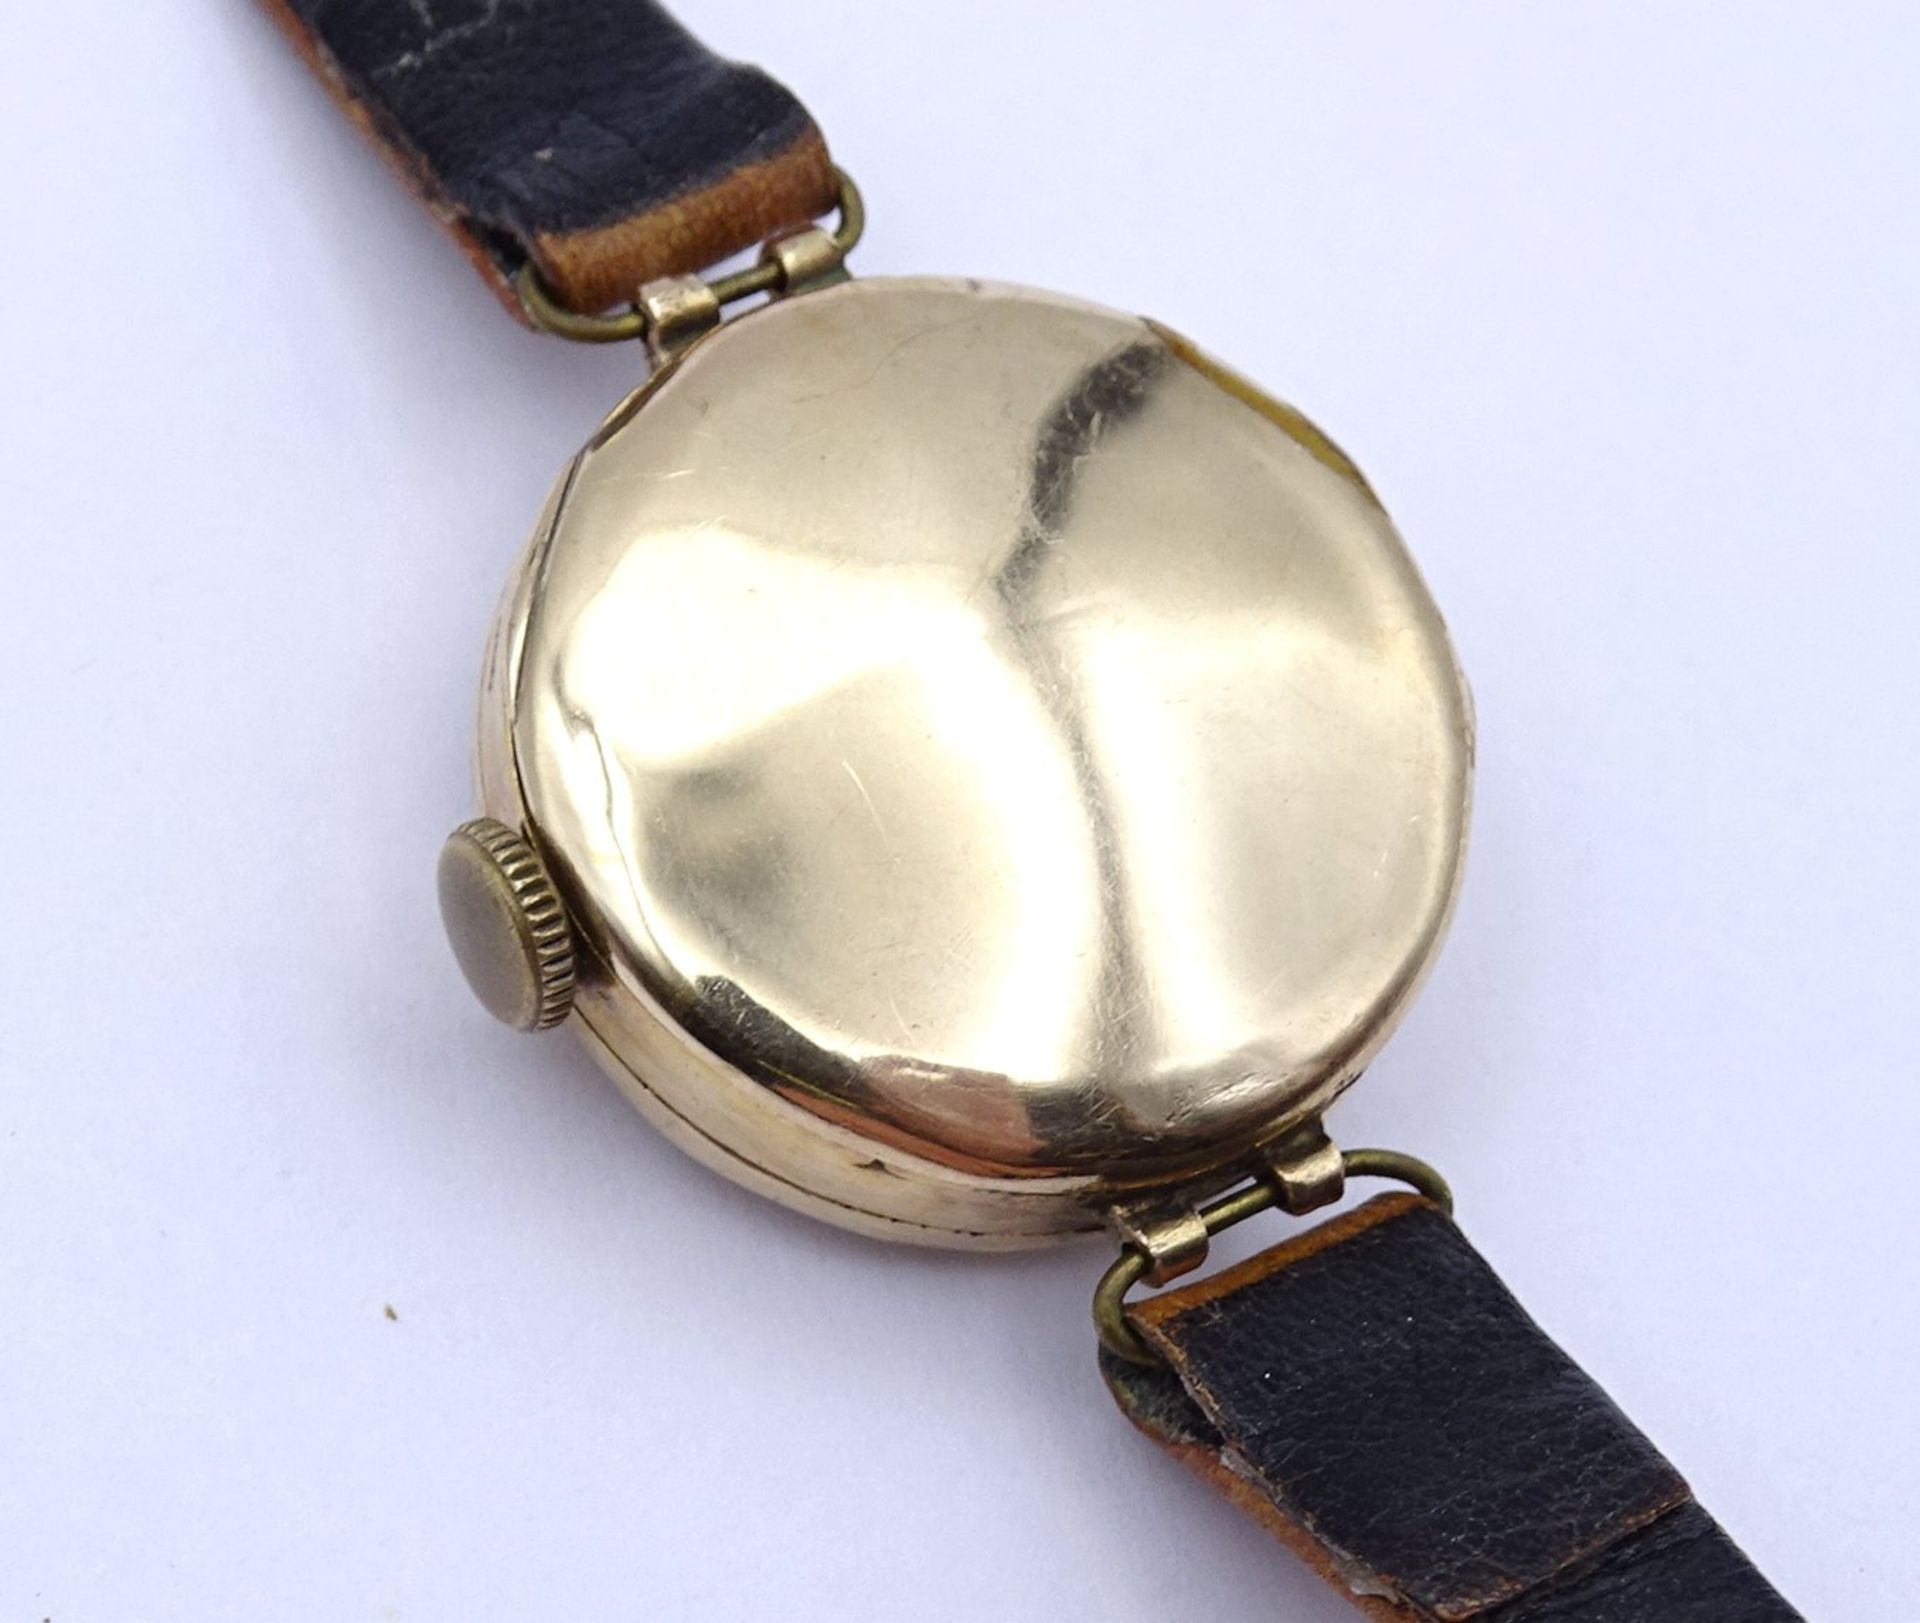 Armbanduhr "Rolex" Mod. Rolco, GG Gehäuse 375/000, mechanisch, Werk läuft für einige Minuten, D. 25 - Bild 4 aus 14